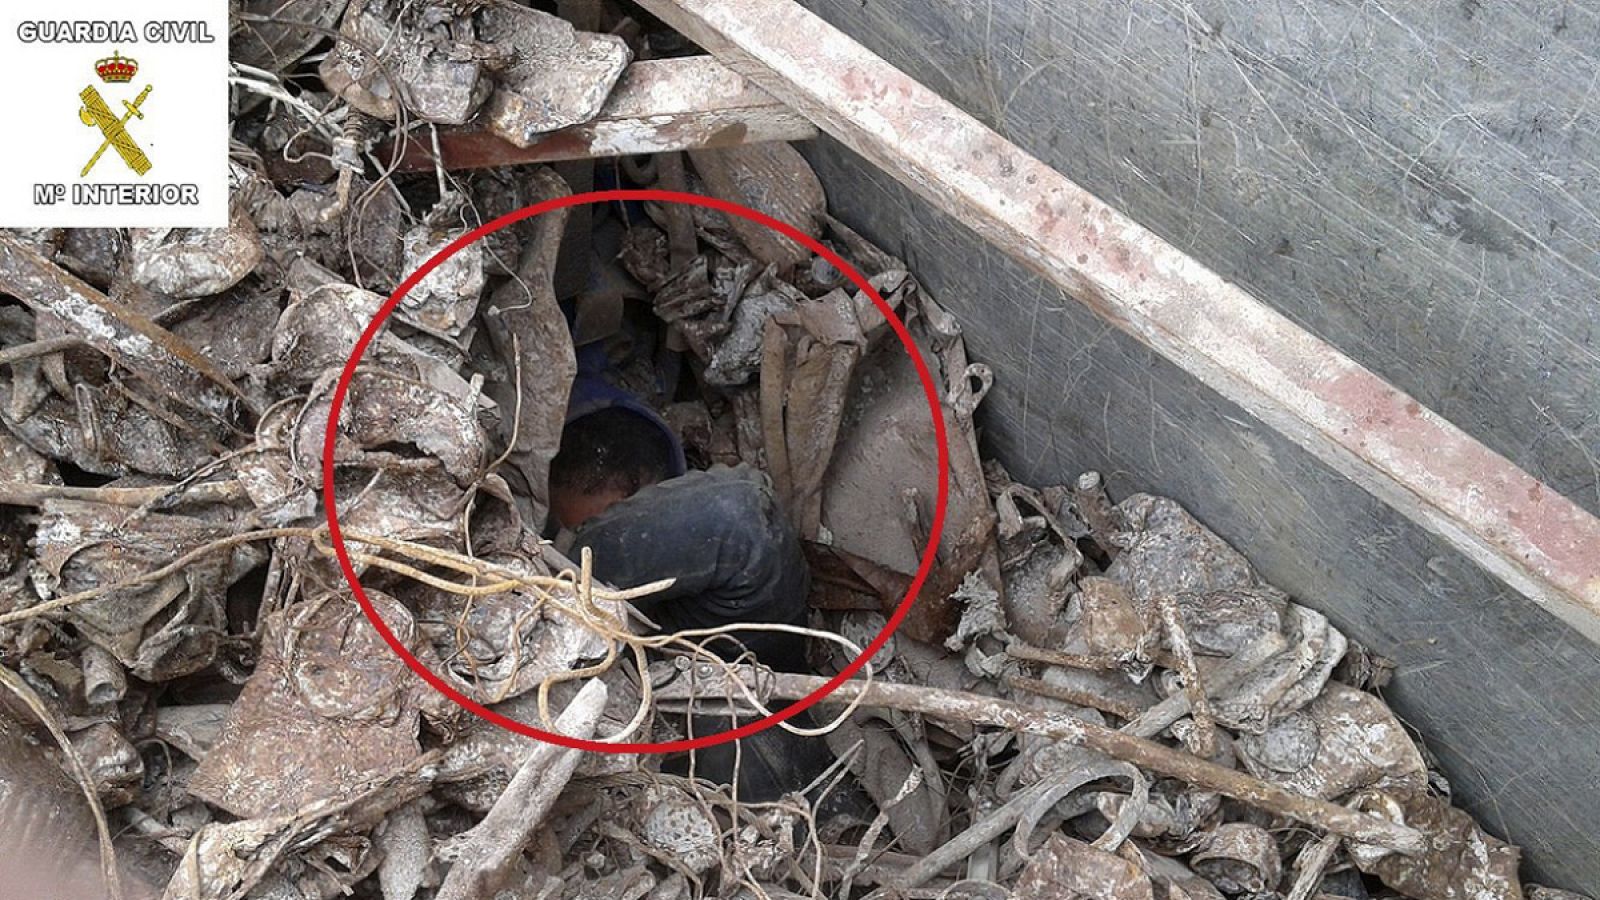 Uno de los 15 menores escondidos entre la chatarra que han sido rescatados por la Guardia Civil